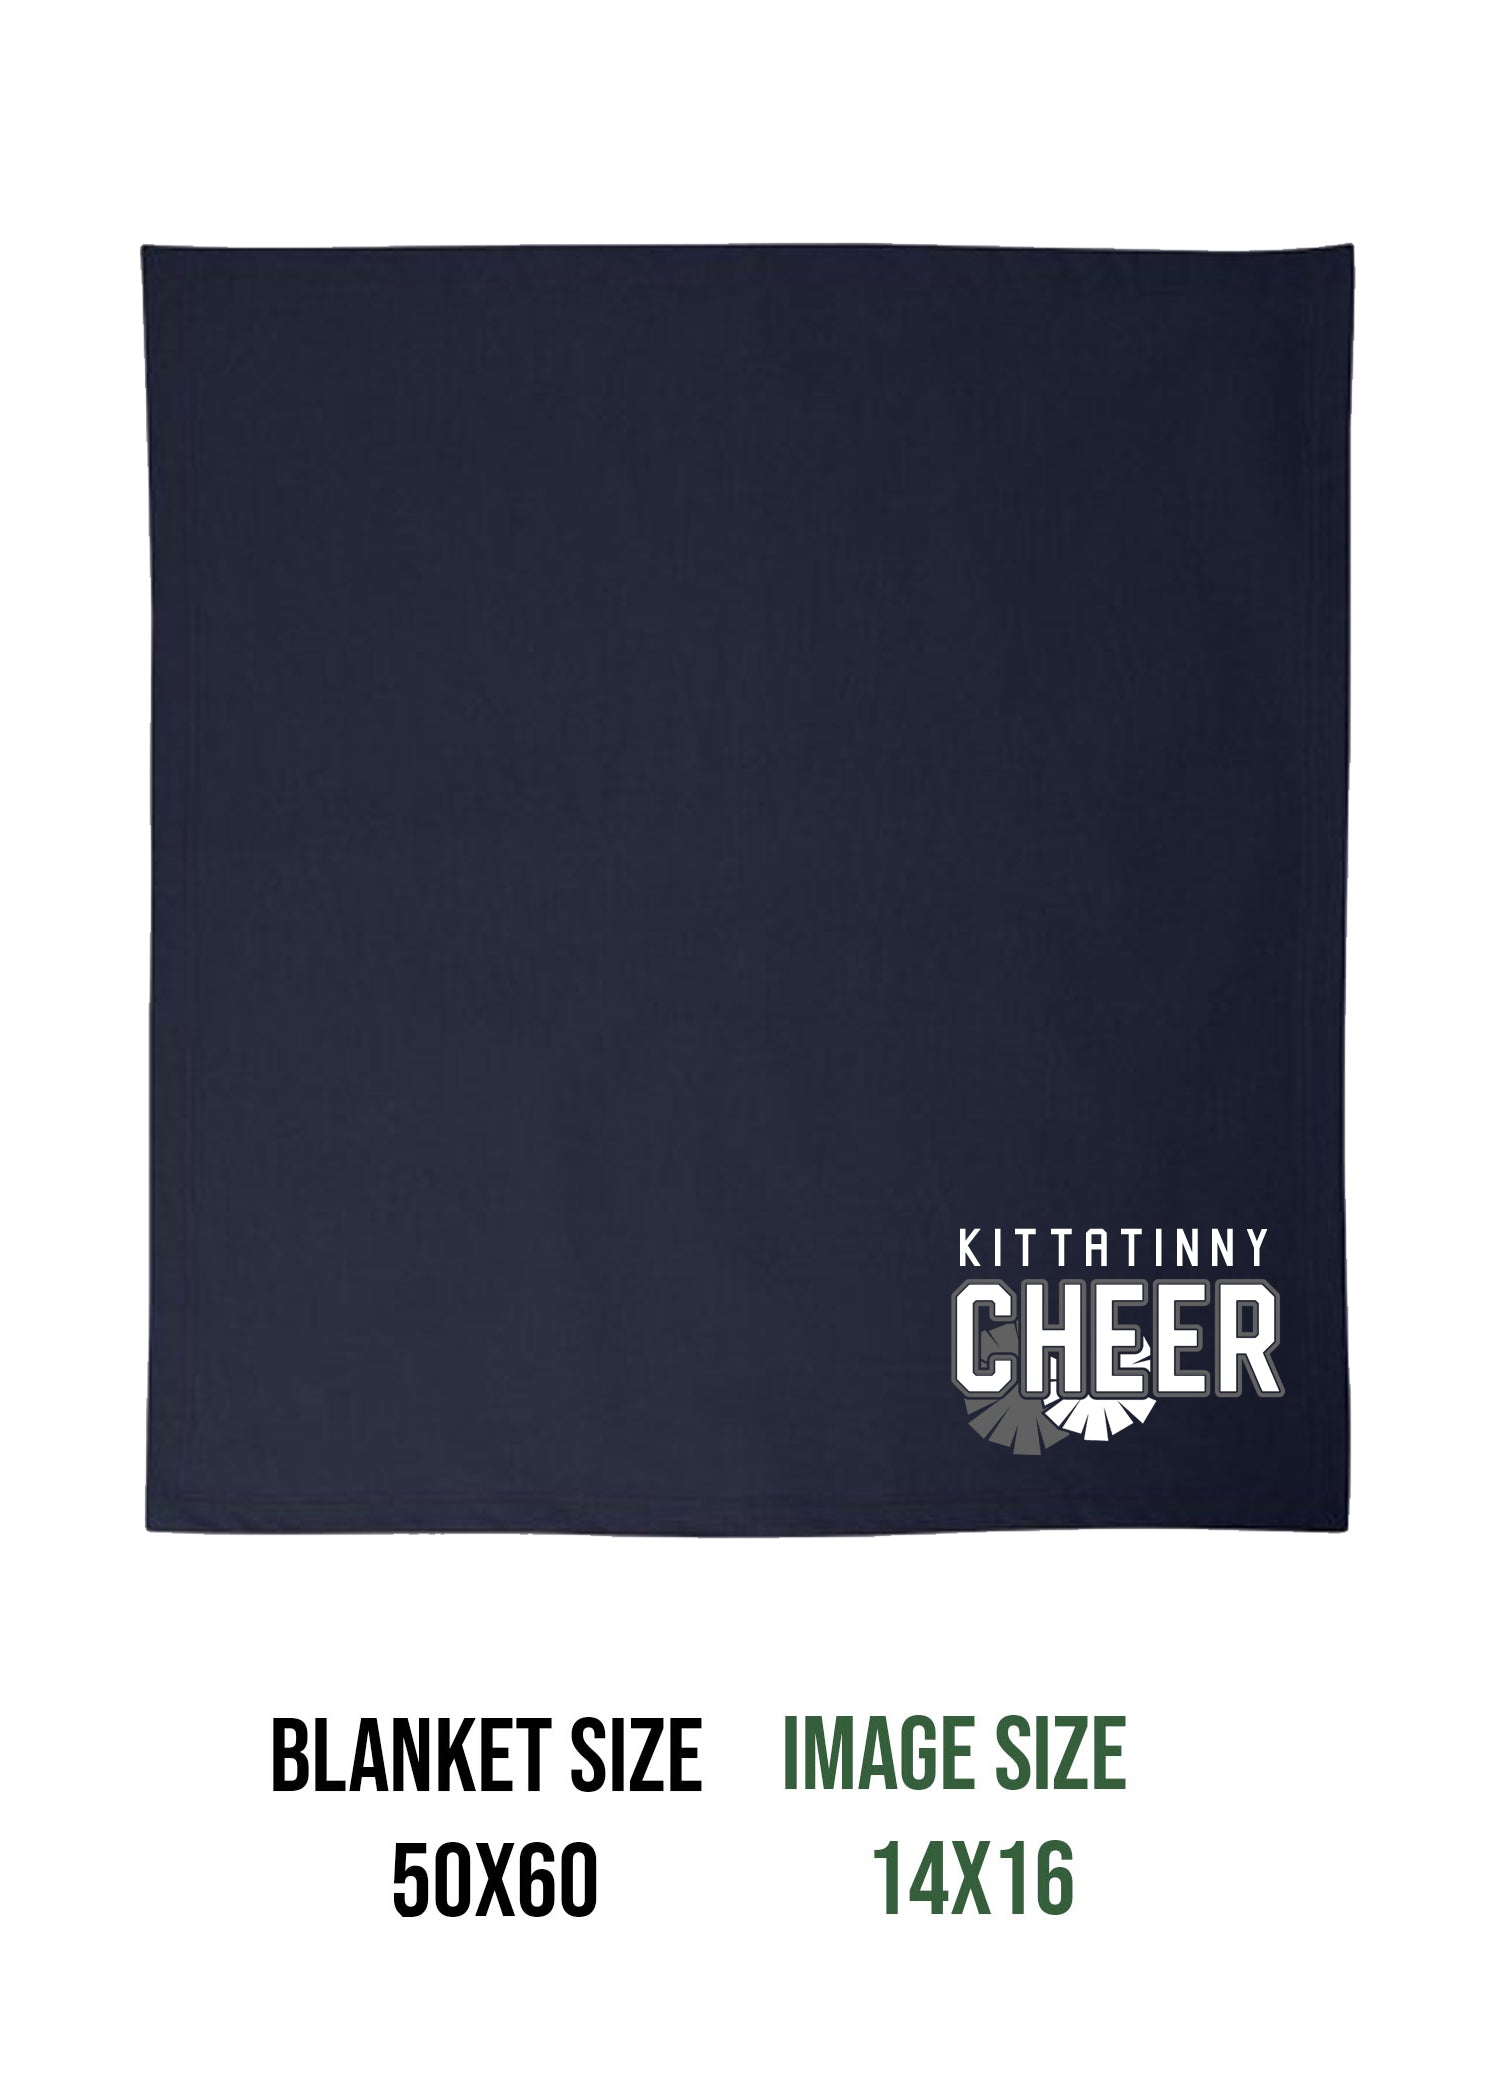 Kittatinny Cheer Design 4 Blanket